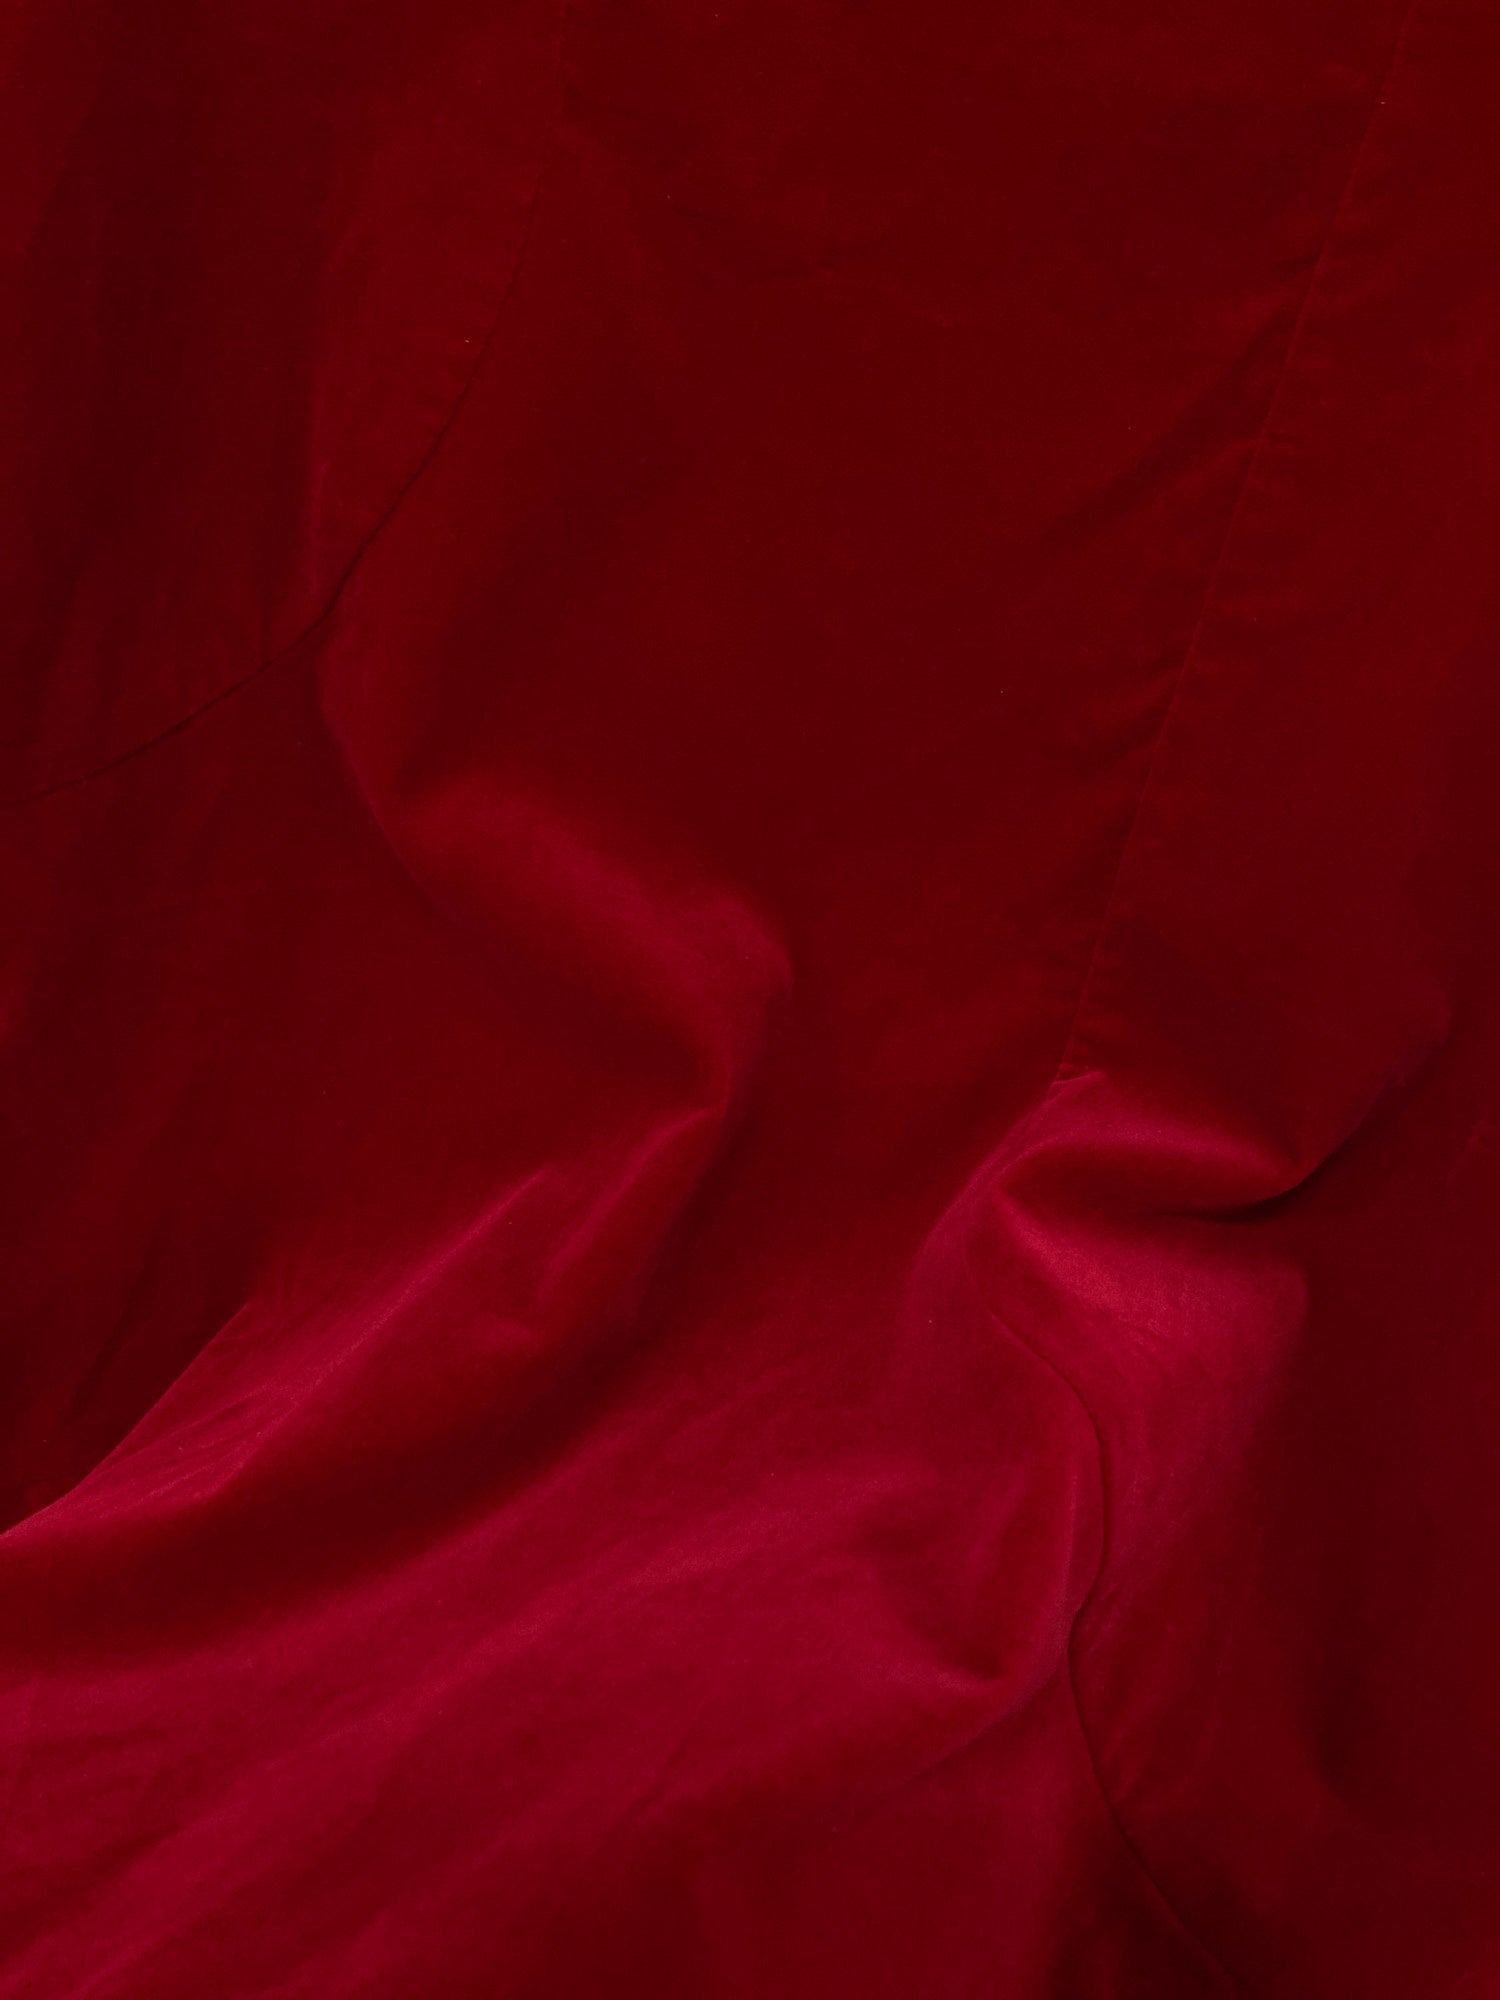 Comme des Garcons AW1995 red velvet sleeveless dress